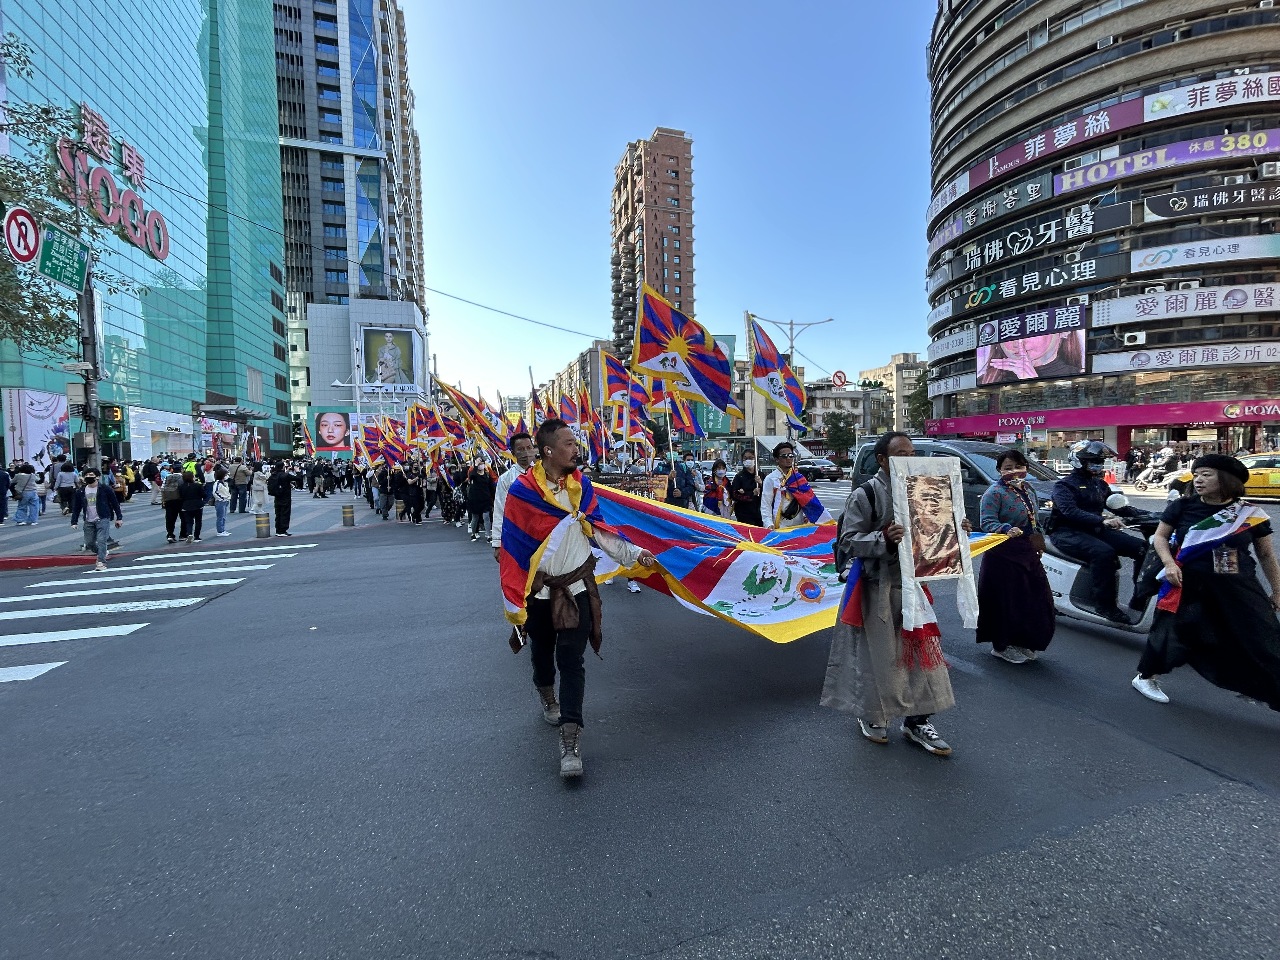 西藏抗暴日64週年大遊行 盼受中國迫害的人民齊爭取自由民主